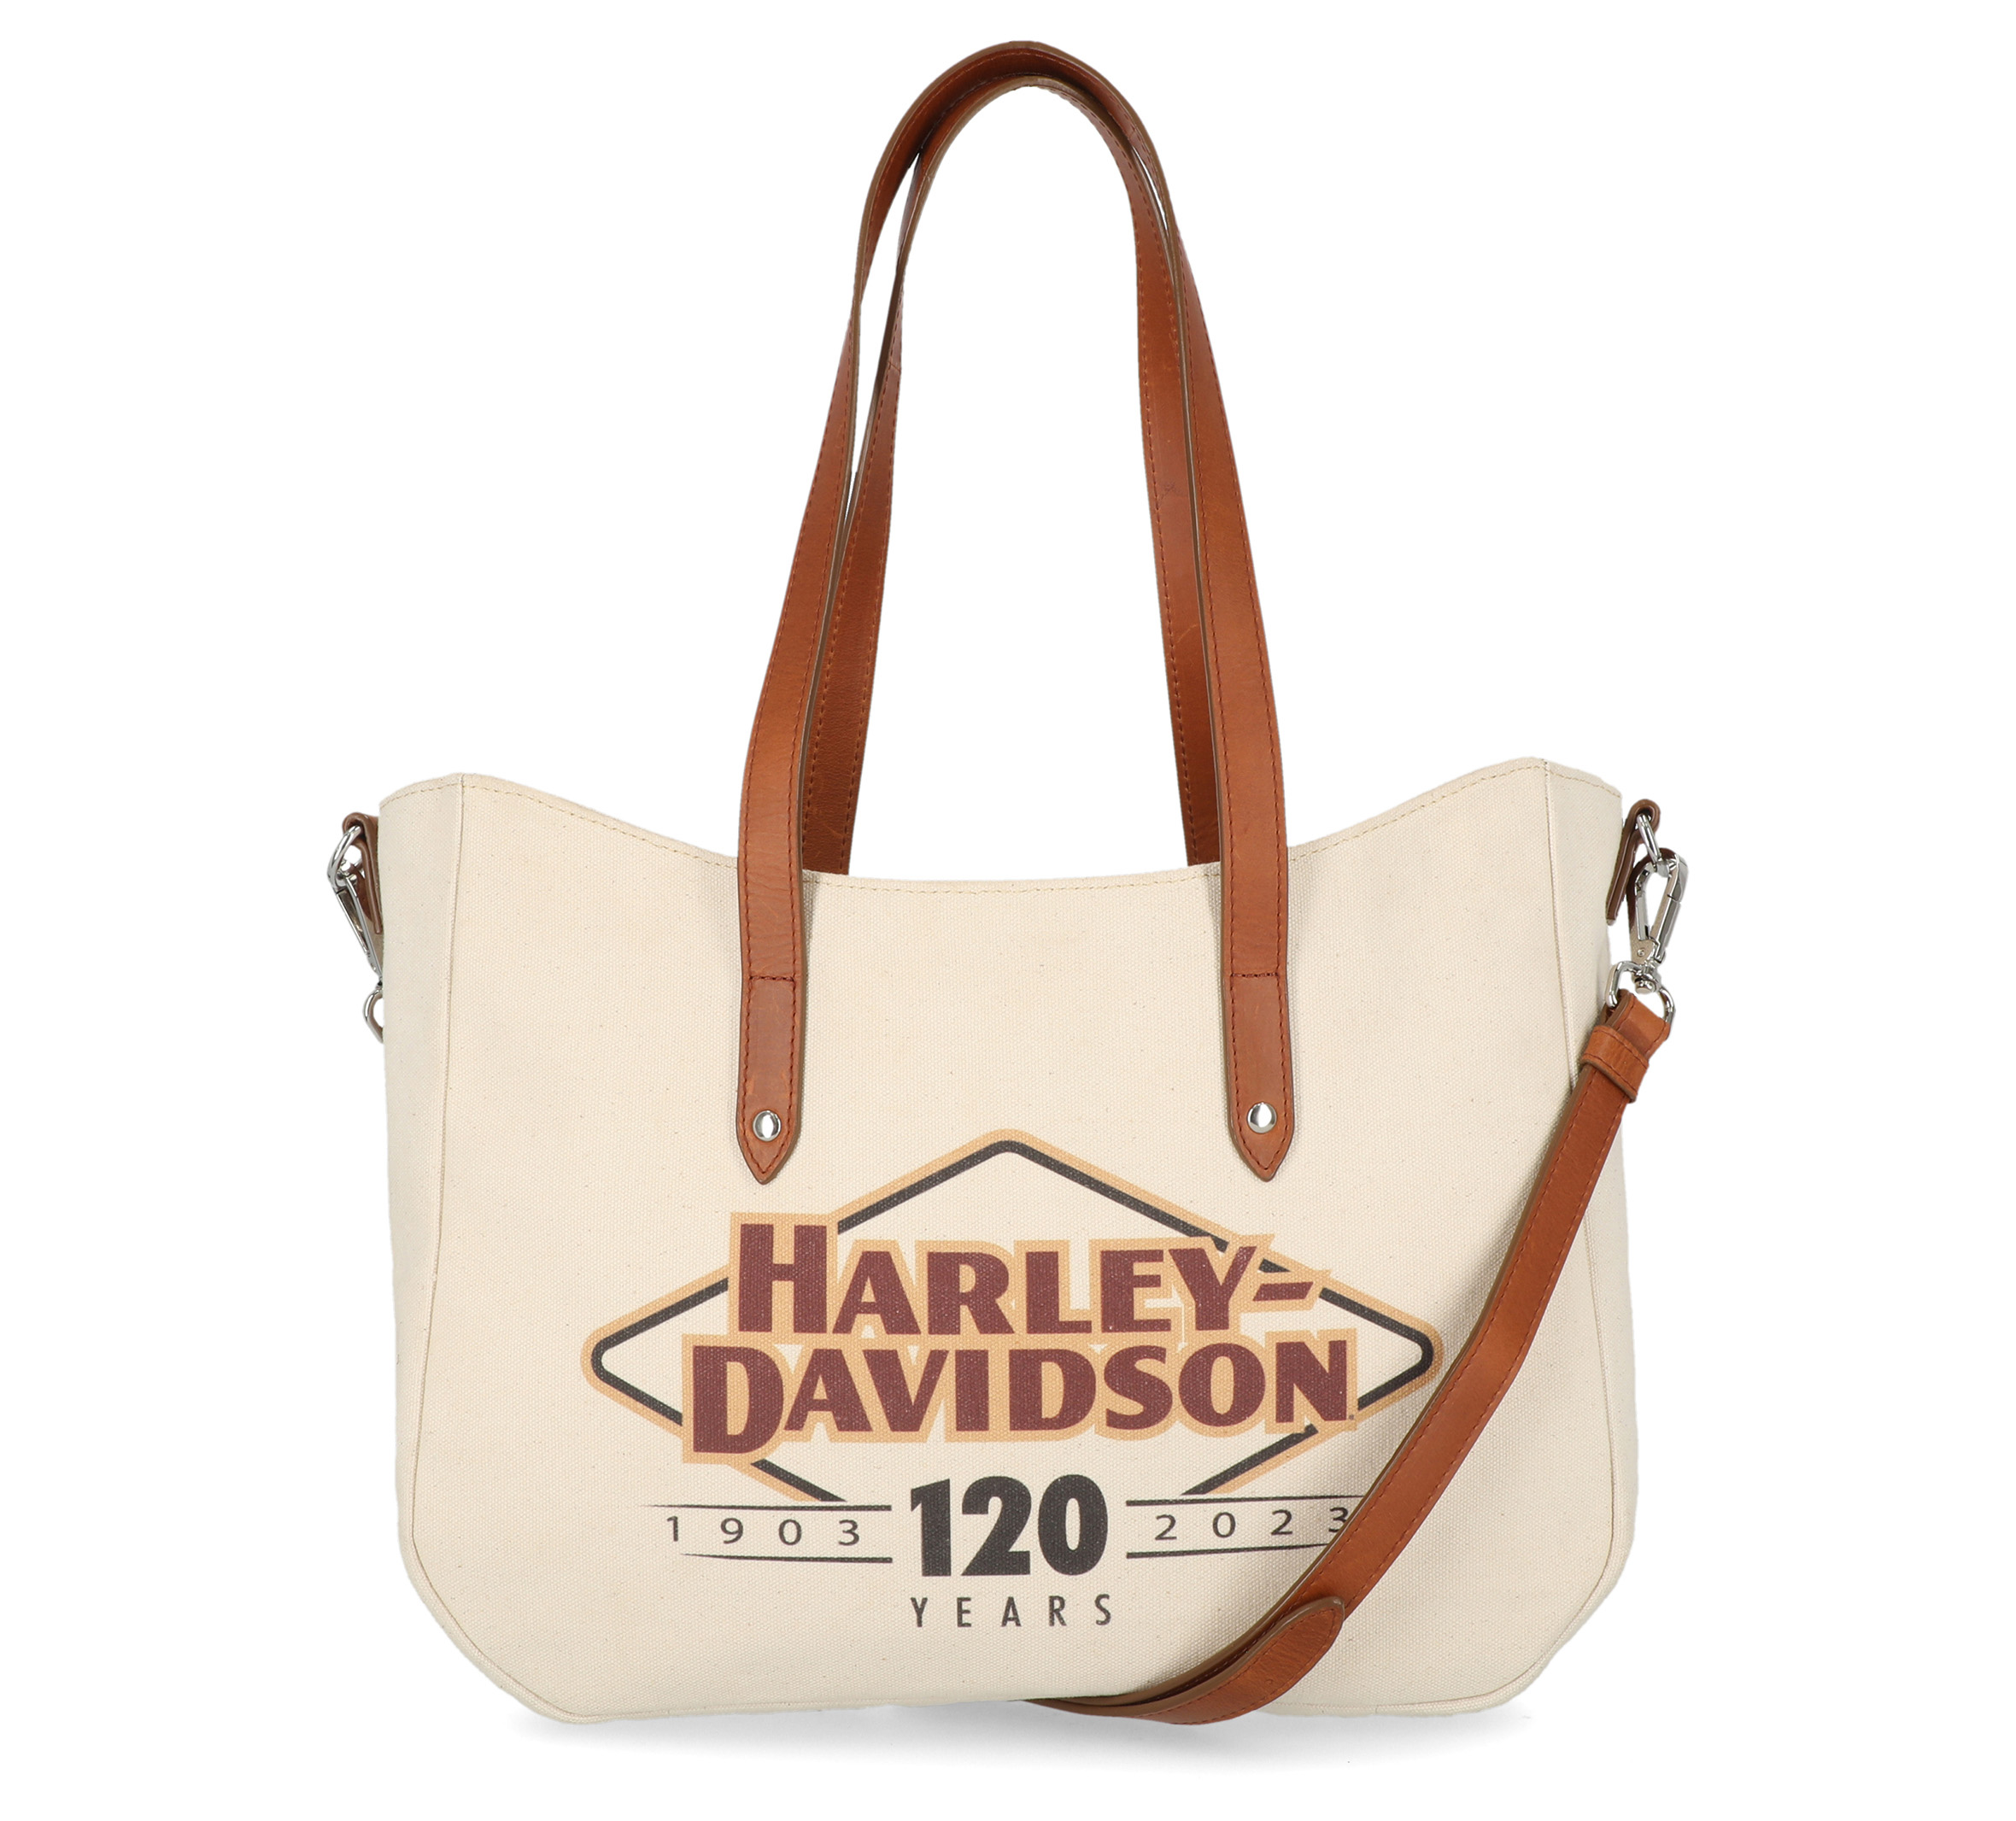 Harley Davidson Purse  Harley davidson purses, Black harley davidson, Harley  davidson clothing